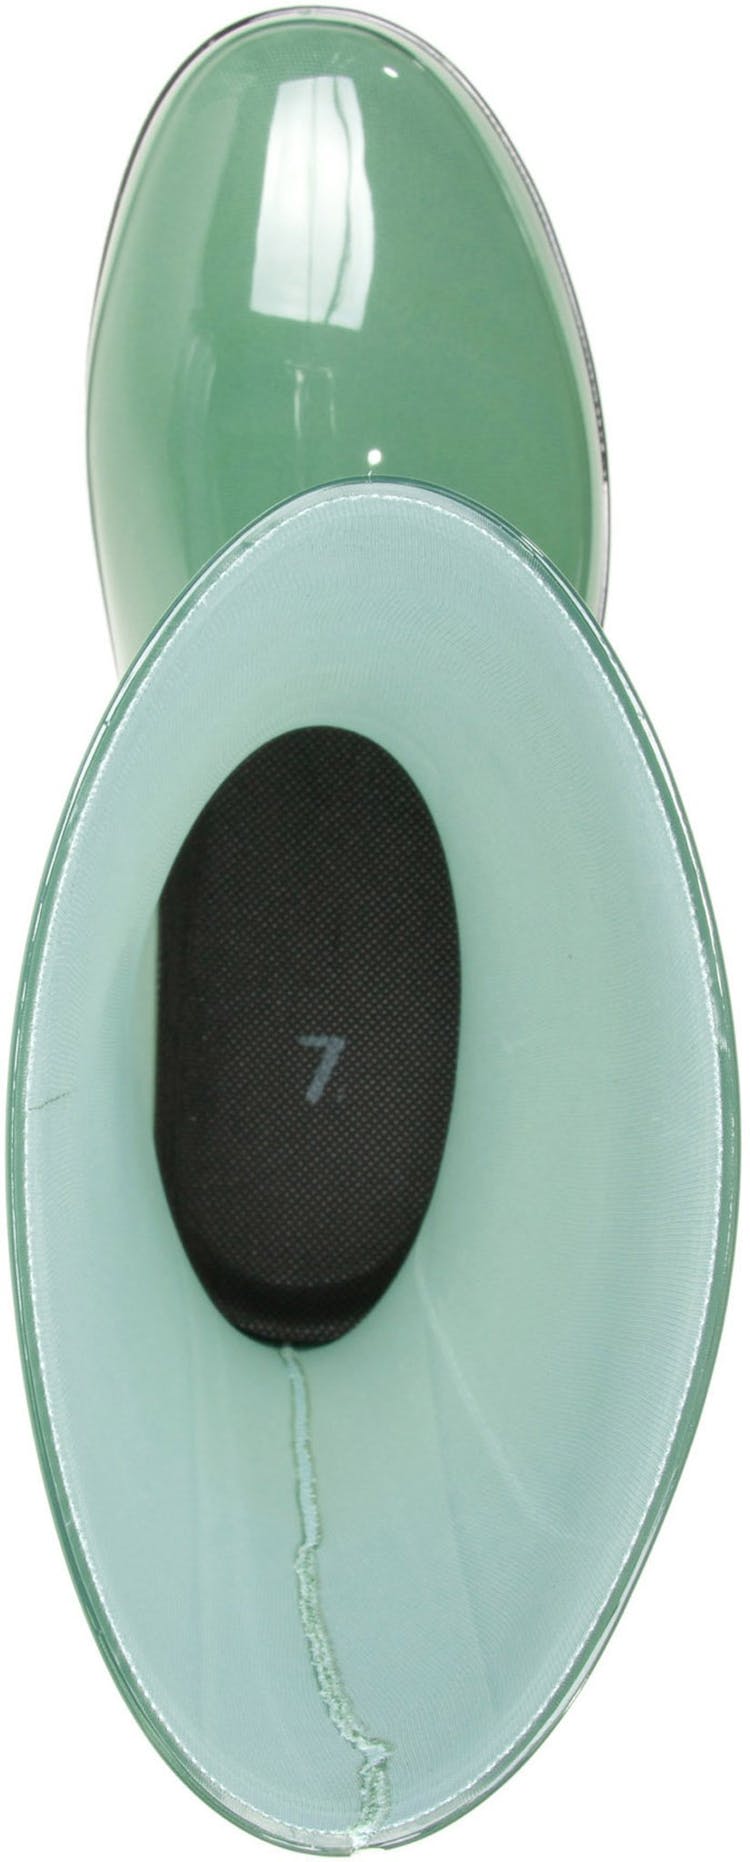 Numéro de l'image de la galerie de produits 4 pour le produit Bottes de pluie imperméables Heidi2 - Femme